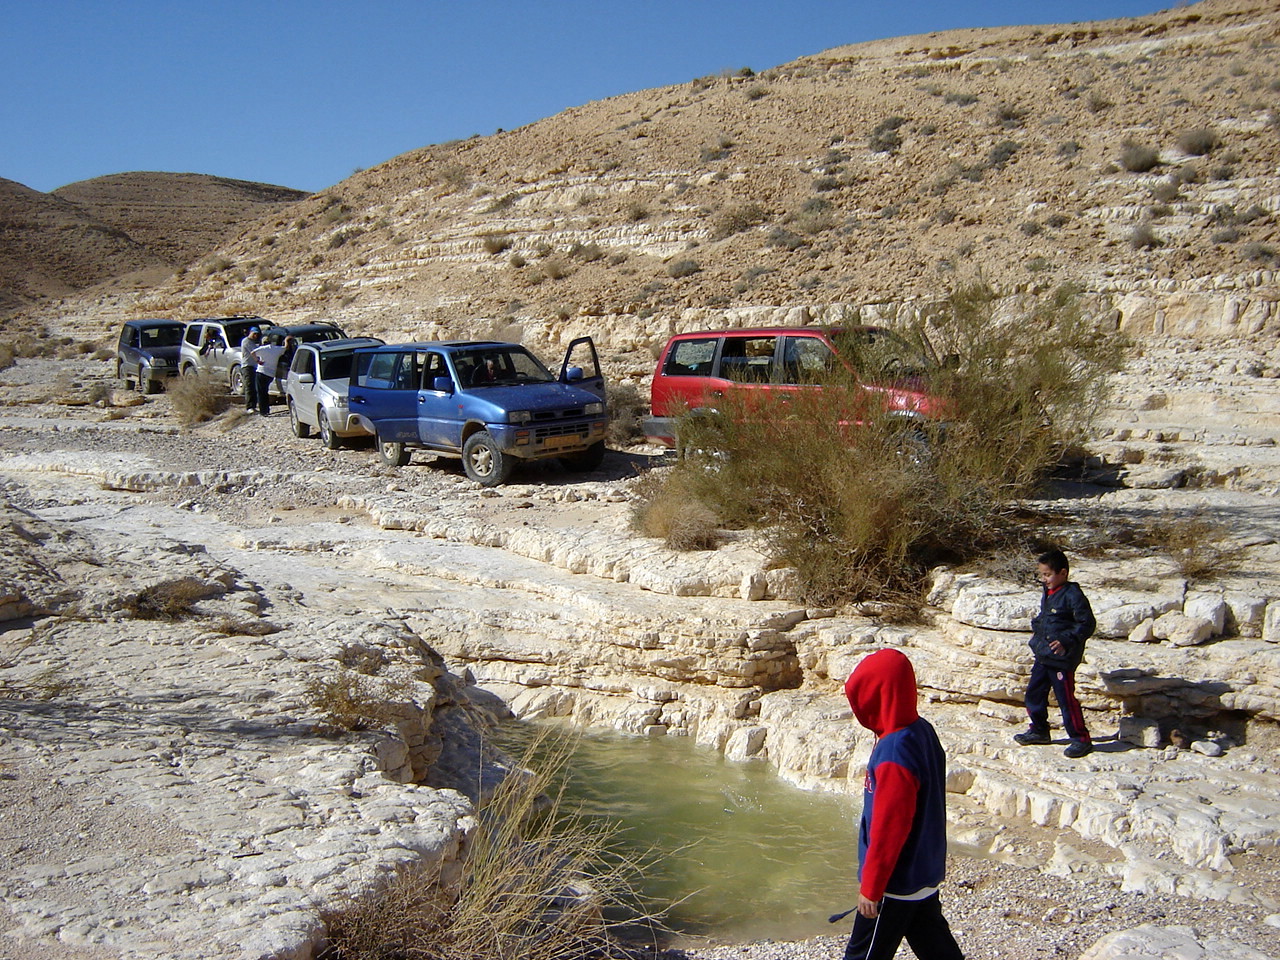  טיול ג'יפים מנחל לוץ למכתש רמון דרך נחל ערוד. E. Nahal Lotz to Ramon via Nahal 